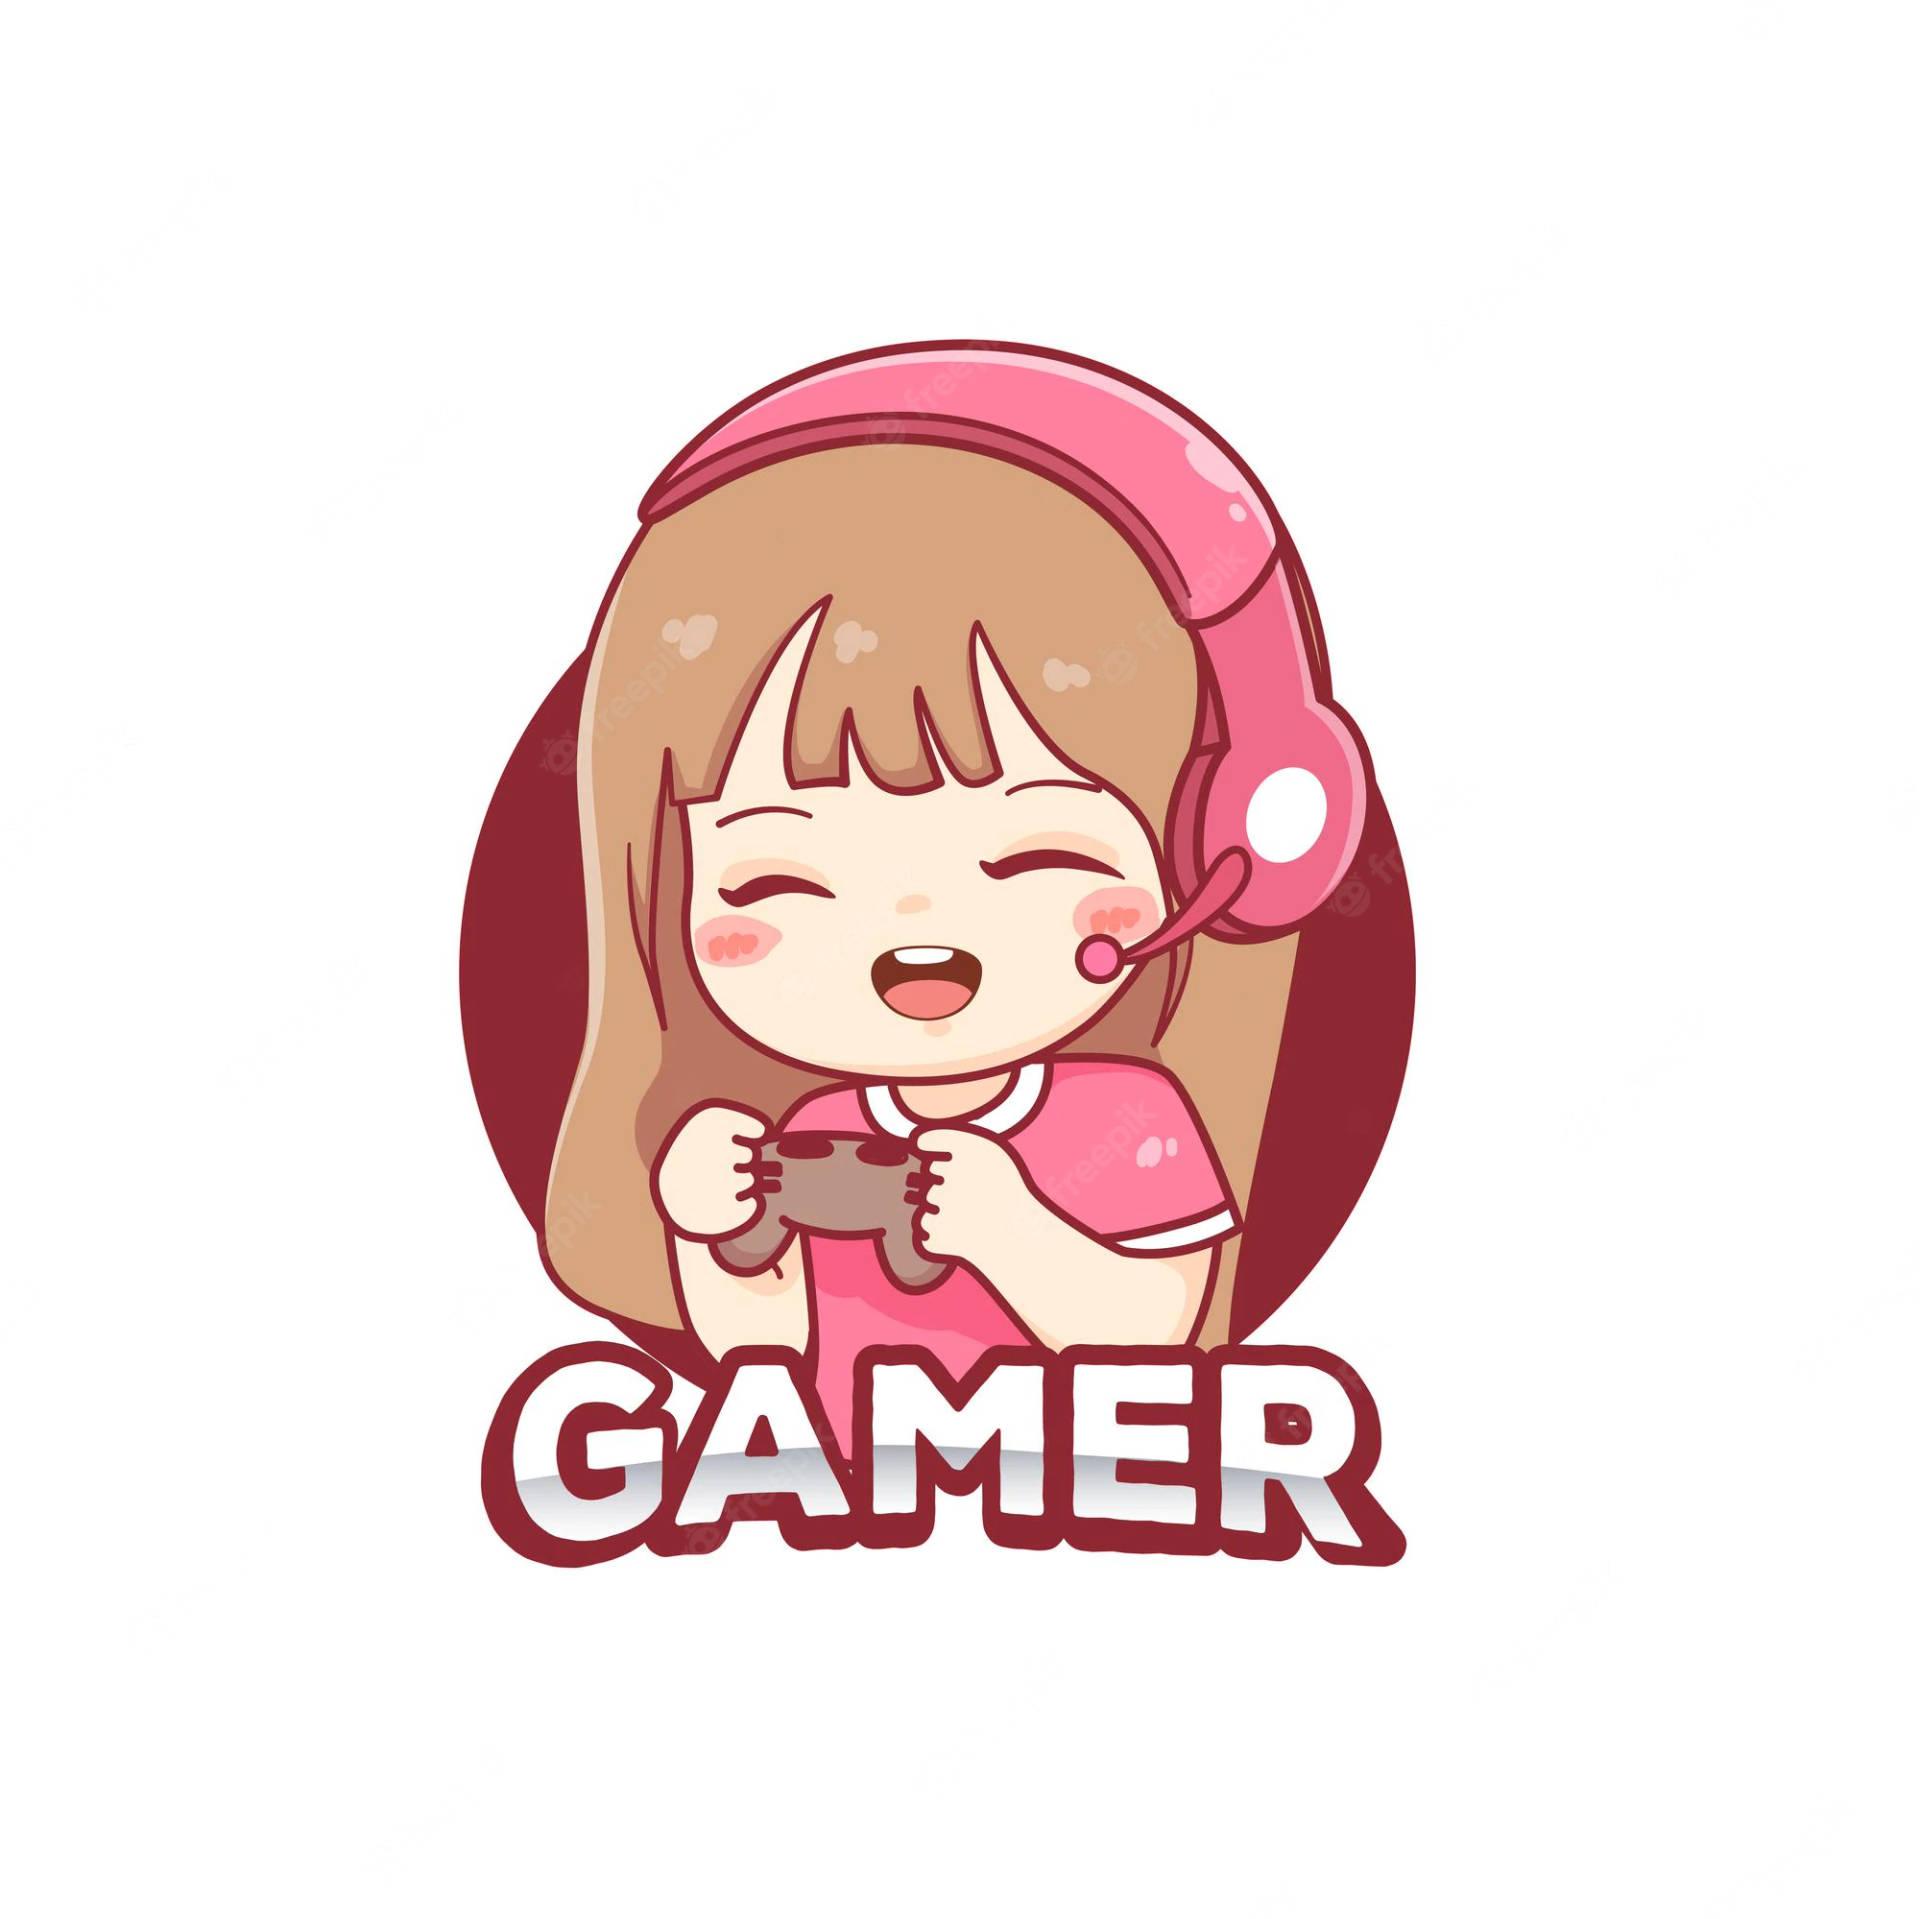 Gamer Girl Mascot Gaming Esport Logo Stock Vector (Royalty Free) 1541277509  | Shutterstock | Game logo design, Game logo, Gamer girl